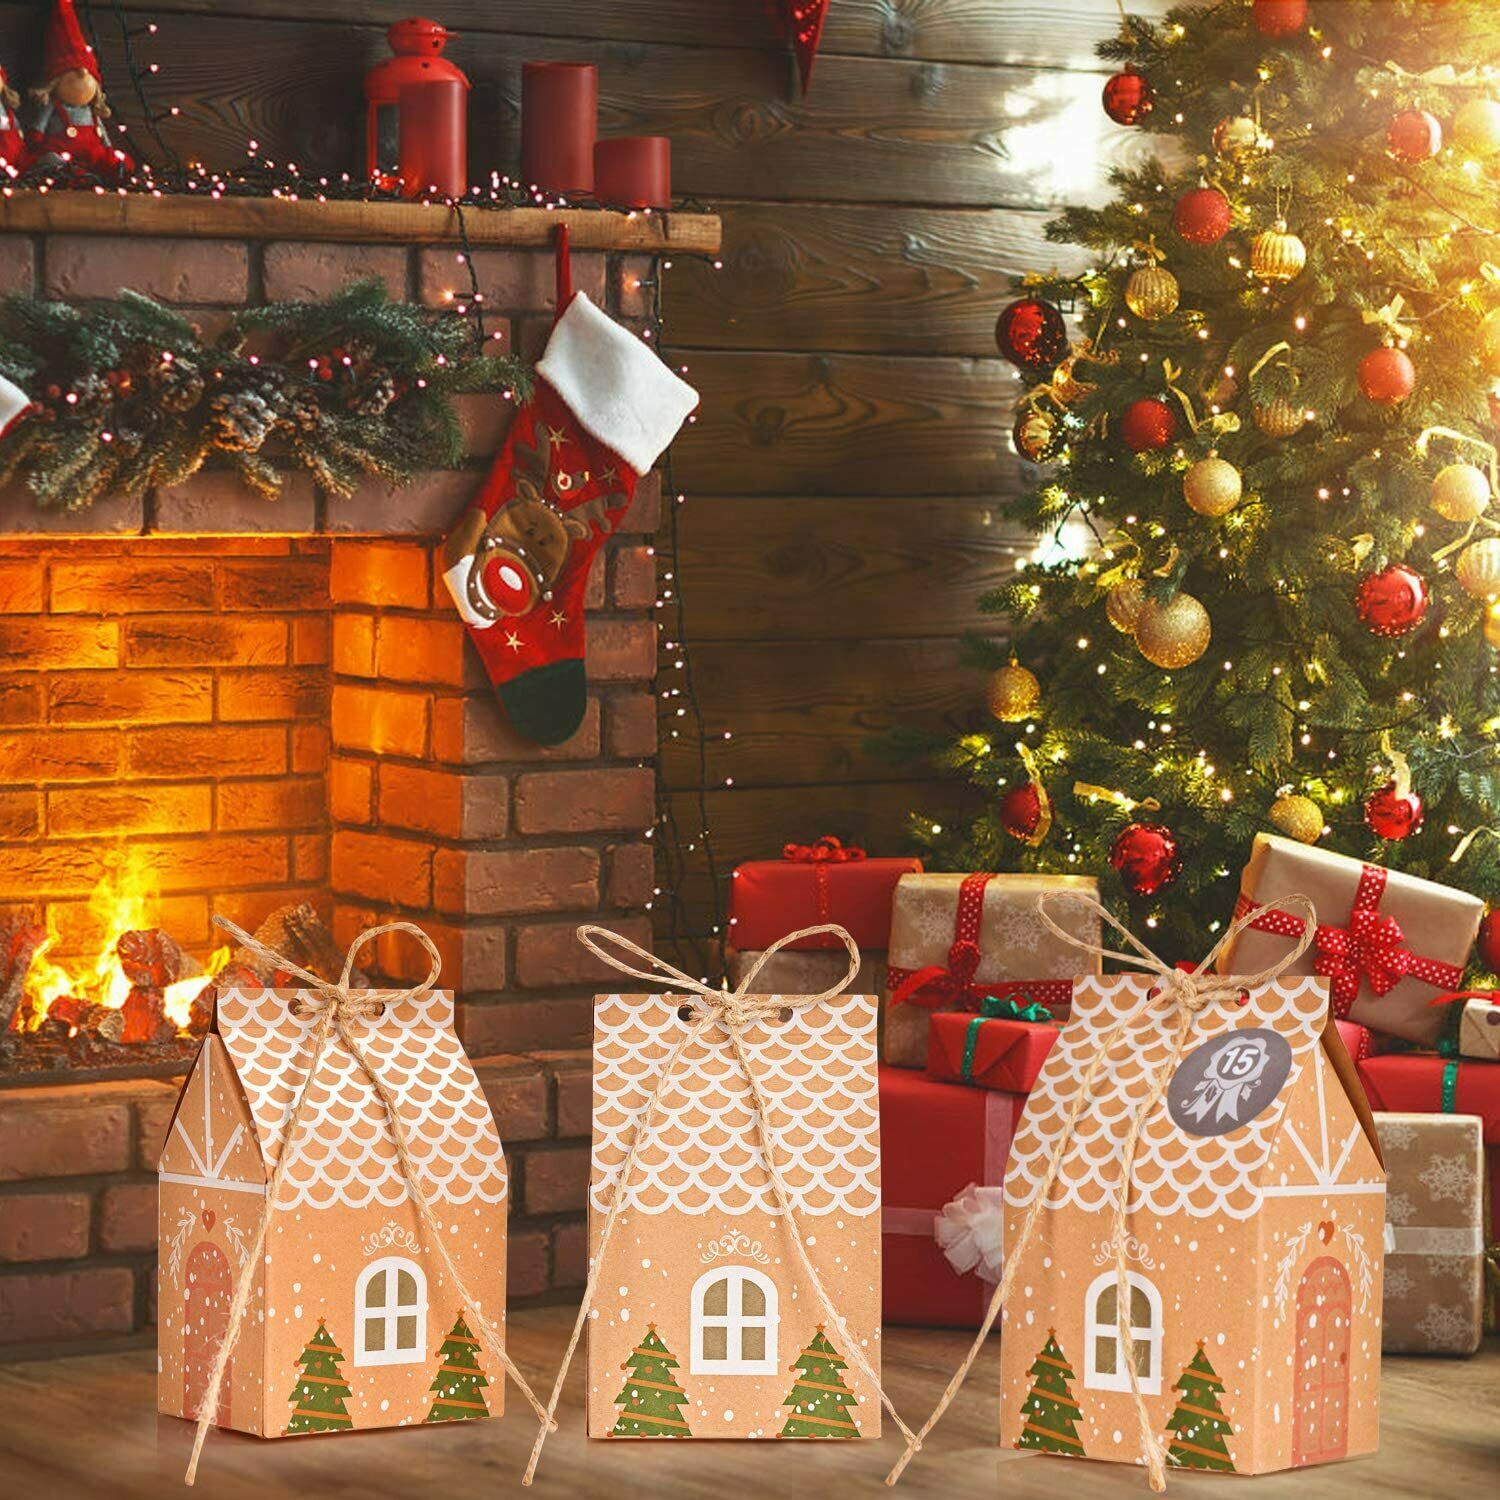 24 x Scatole a forma di casetta, Confezioni regalo per Natale + Adesiv –